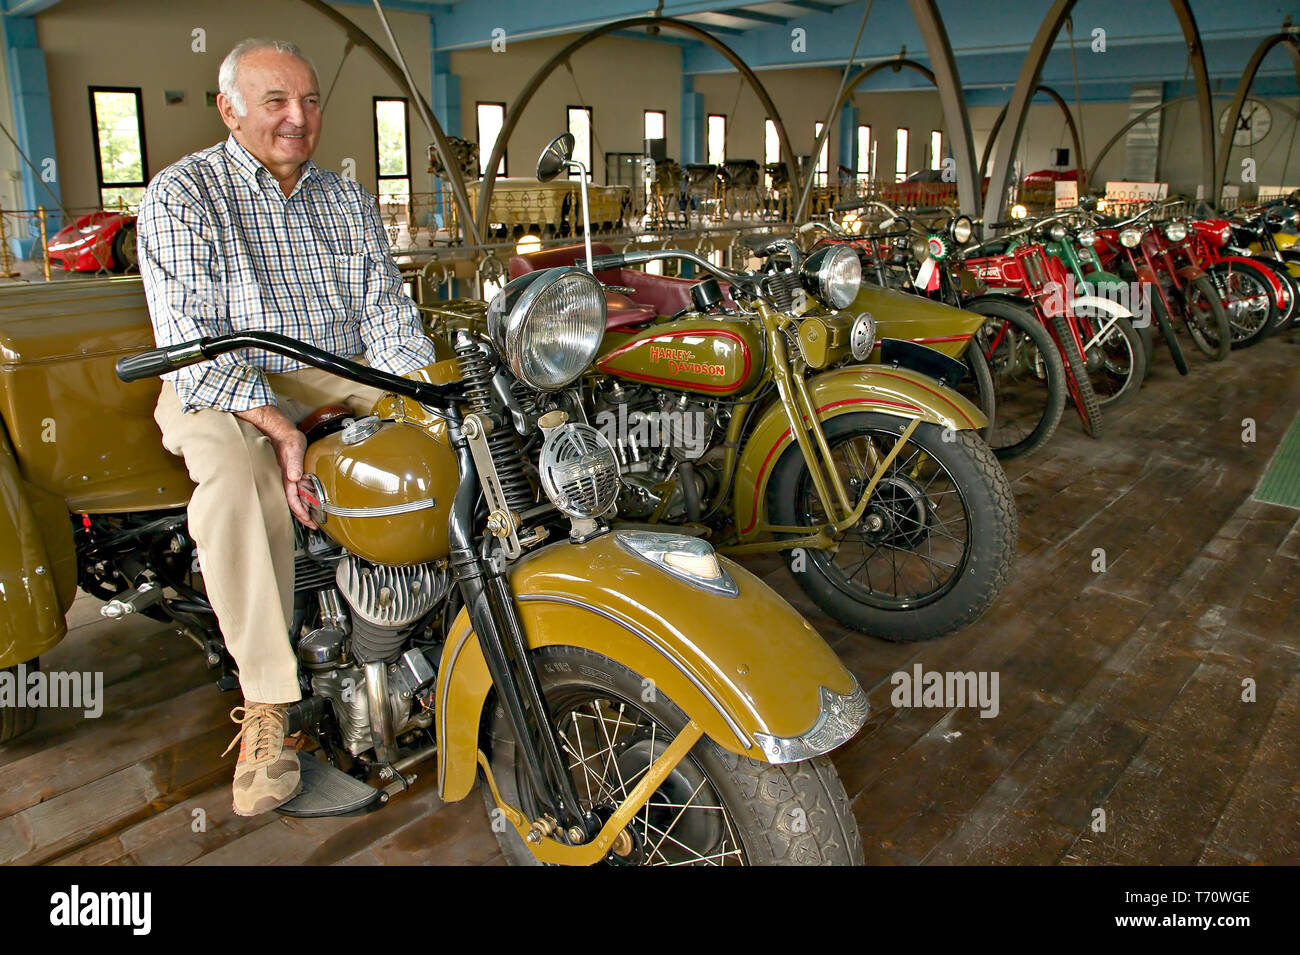 Collezione Umberto Panini (Moto e Auto d'epoca): Umberto Panini in Sella Alla sua Harley Davidson Service. [ENG] Umberto Panini Sammlung von antiken Stockfoto